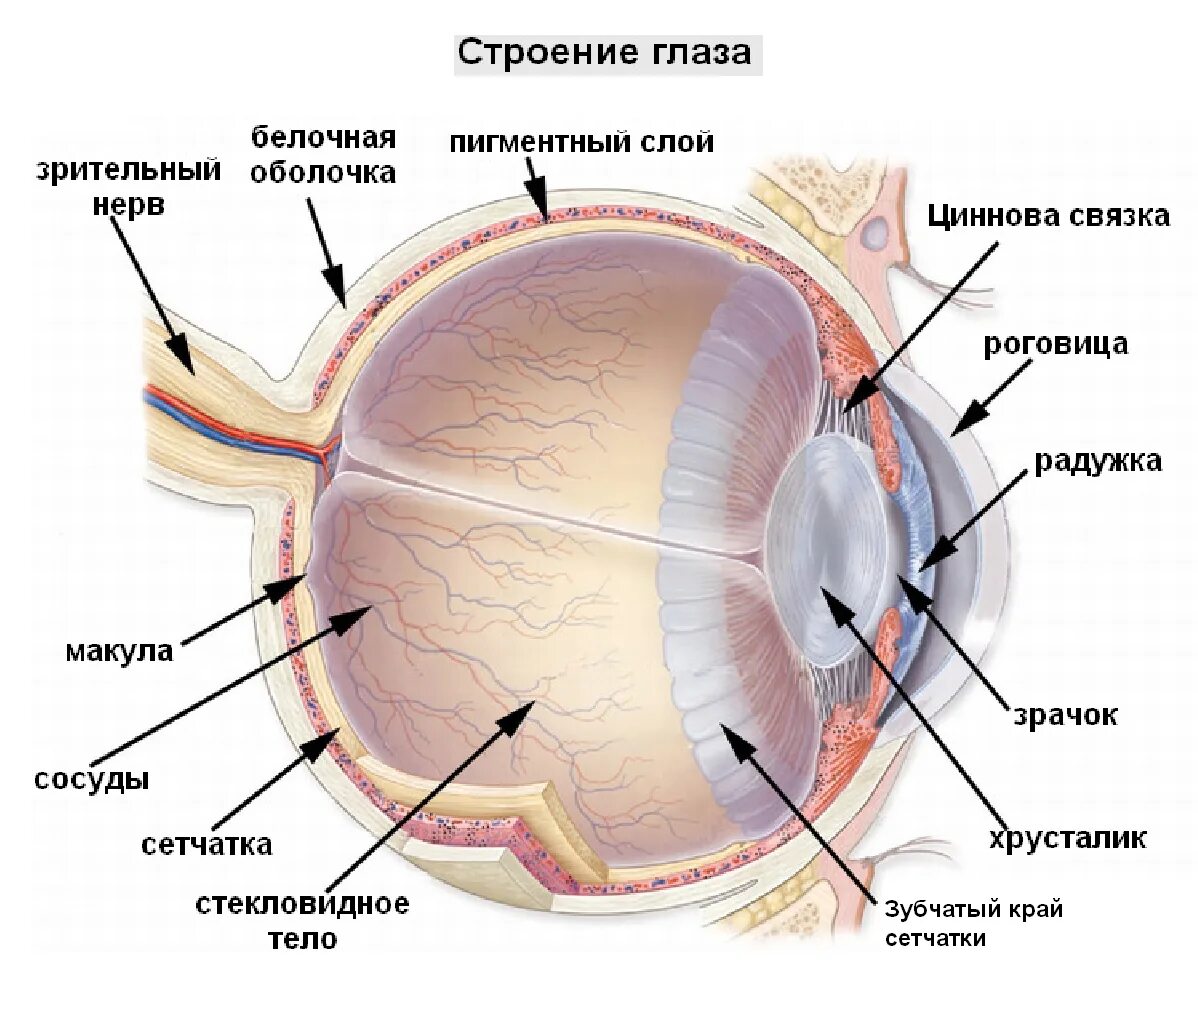 Как называется прозрачная часть белочной оболочки глаза. Сетчатка оболочка глаза. Строение глаза послойно. Строение глазного яблока и сетчатки. Структура глазного яблока схема.